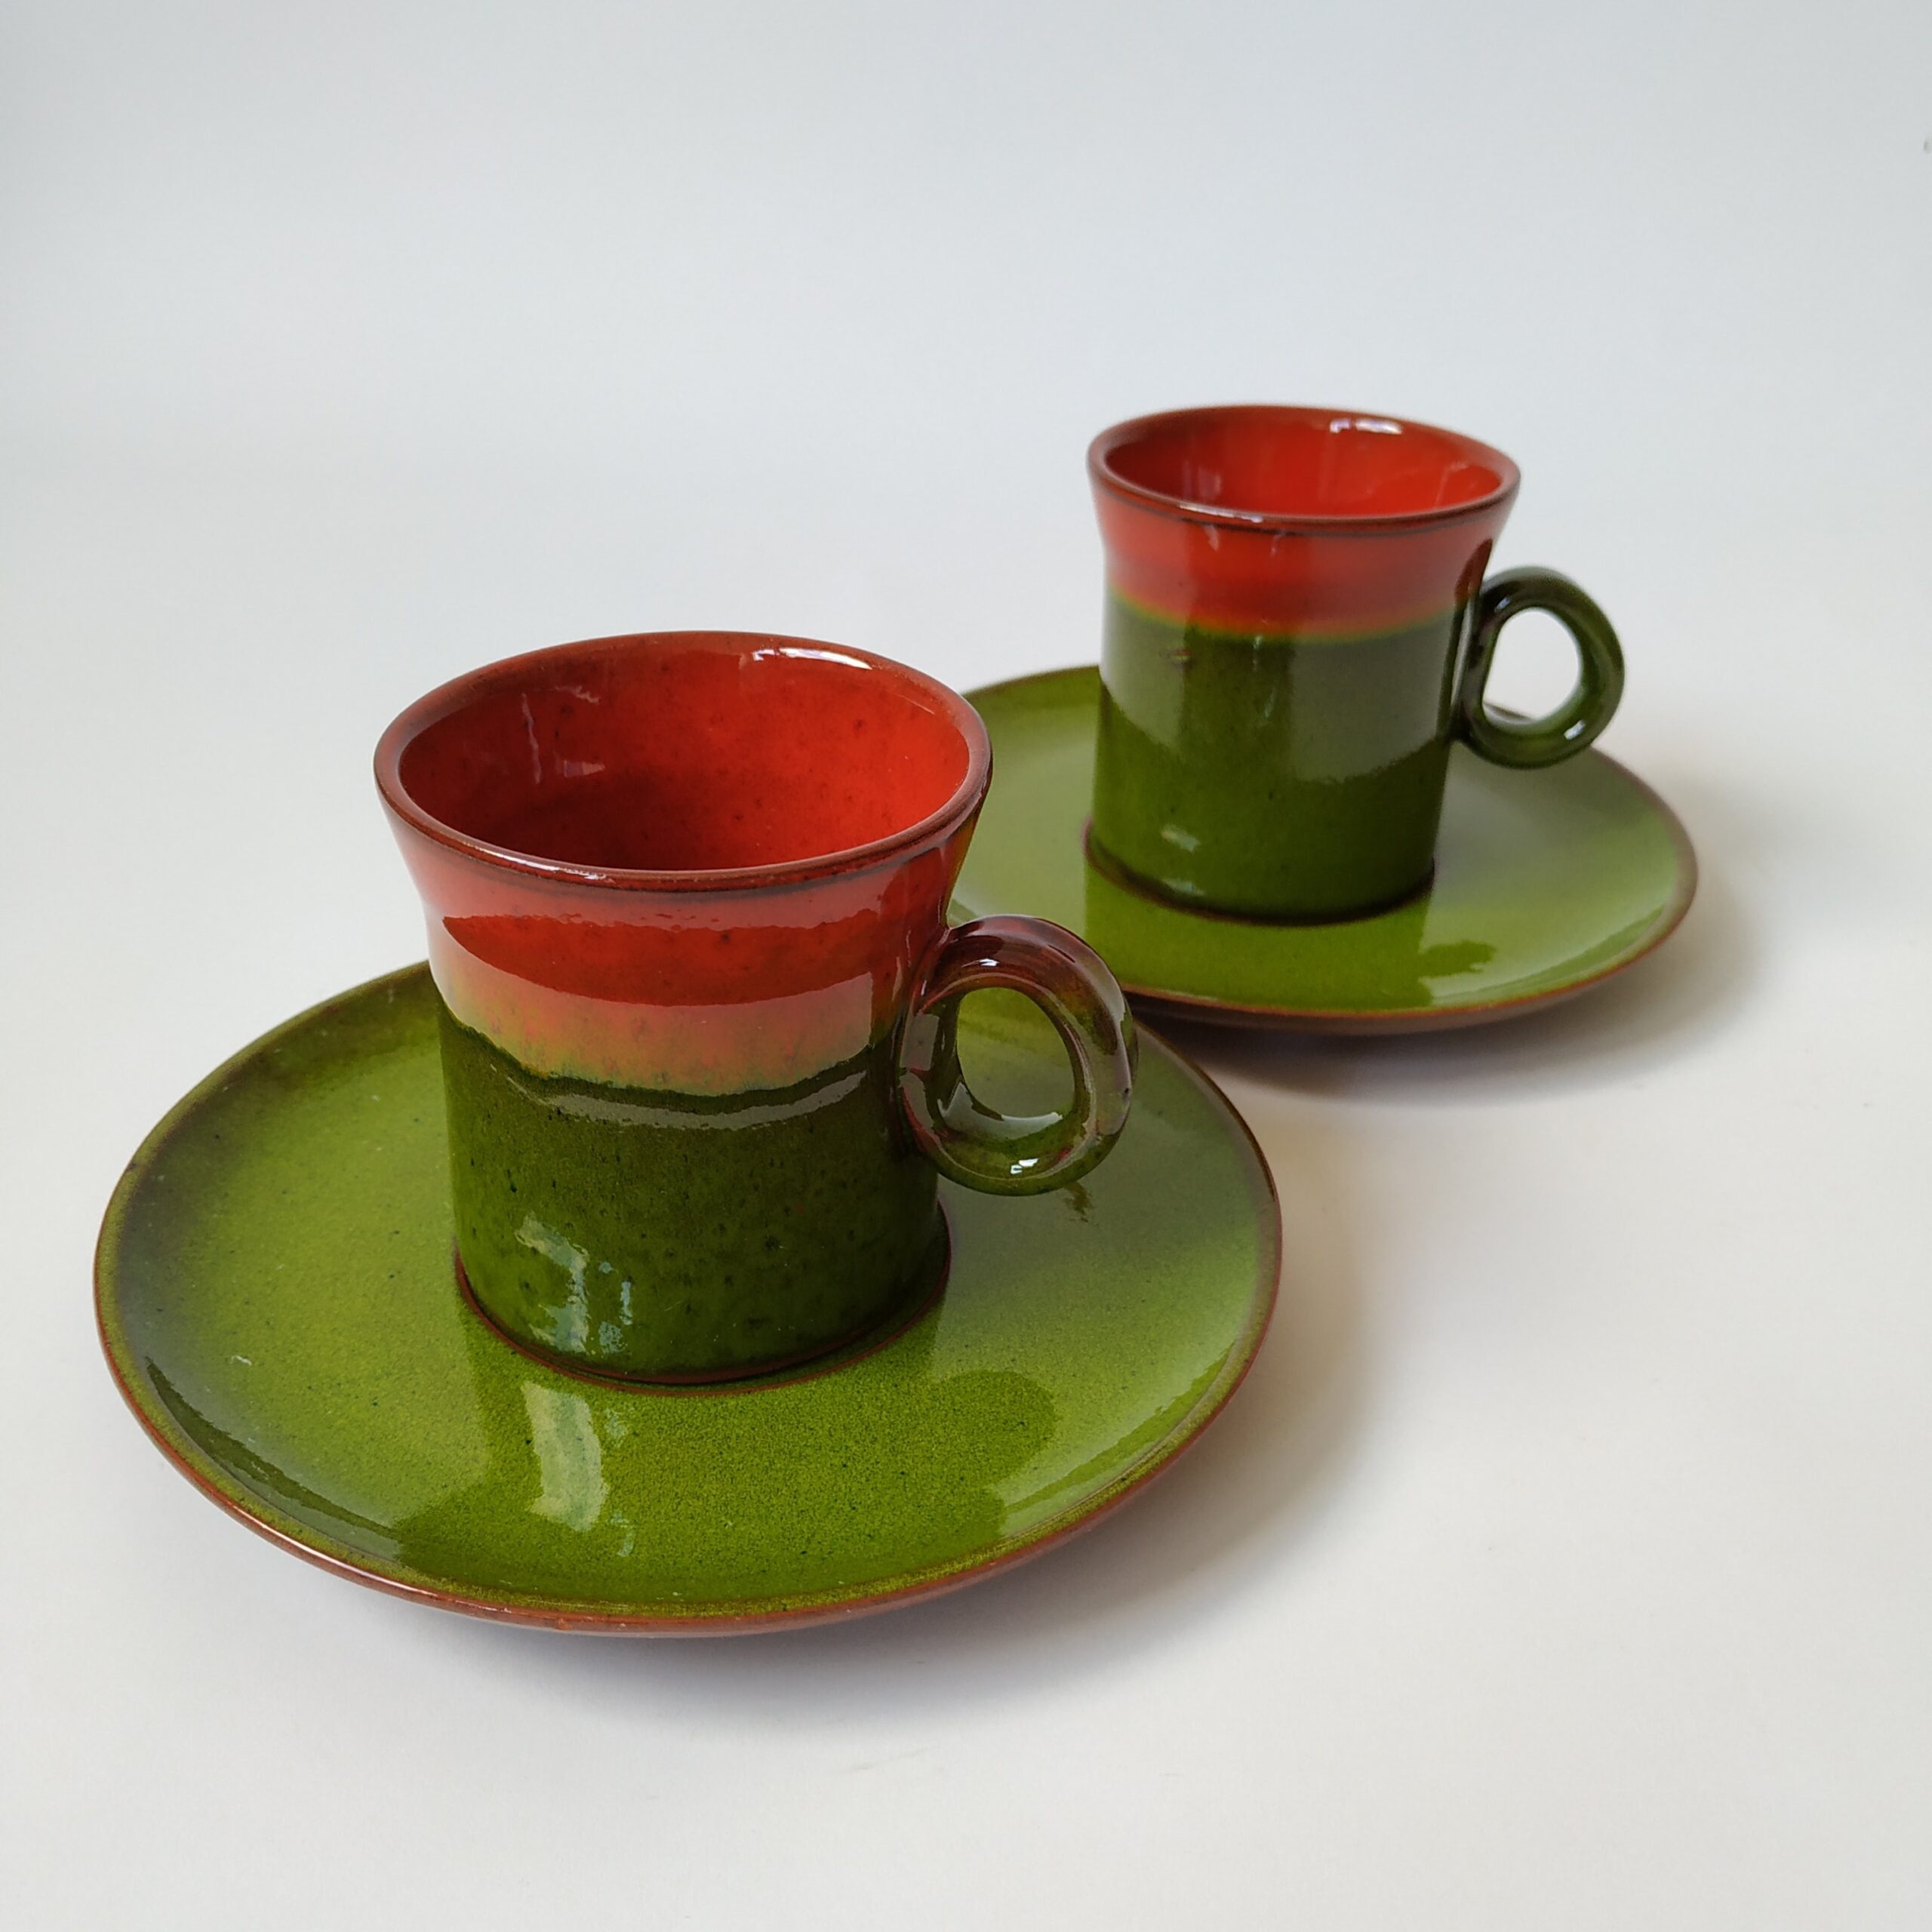 Vintage espressokopjes met schotel in een mooie kleur groen met rood/oranje